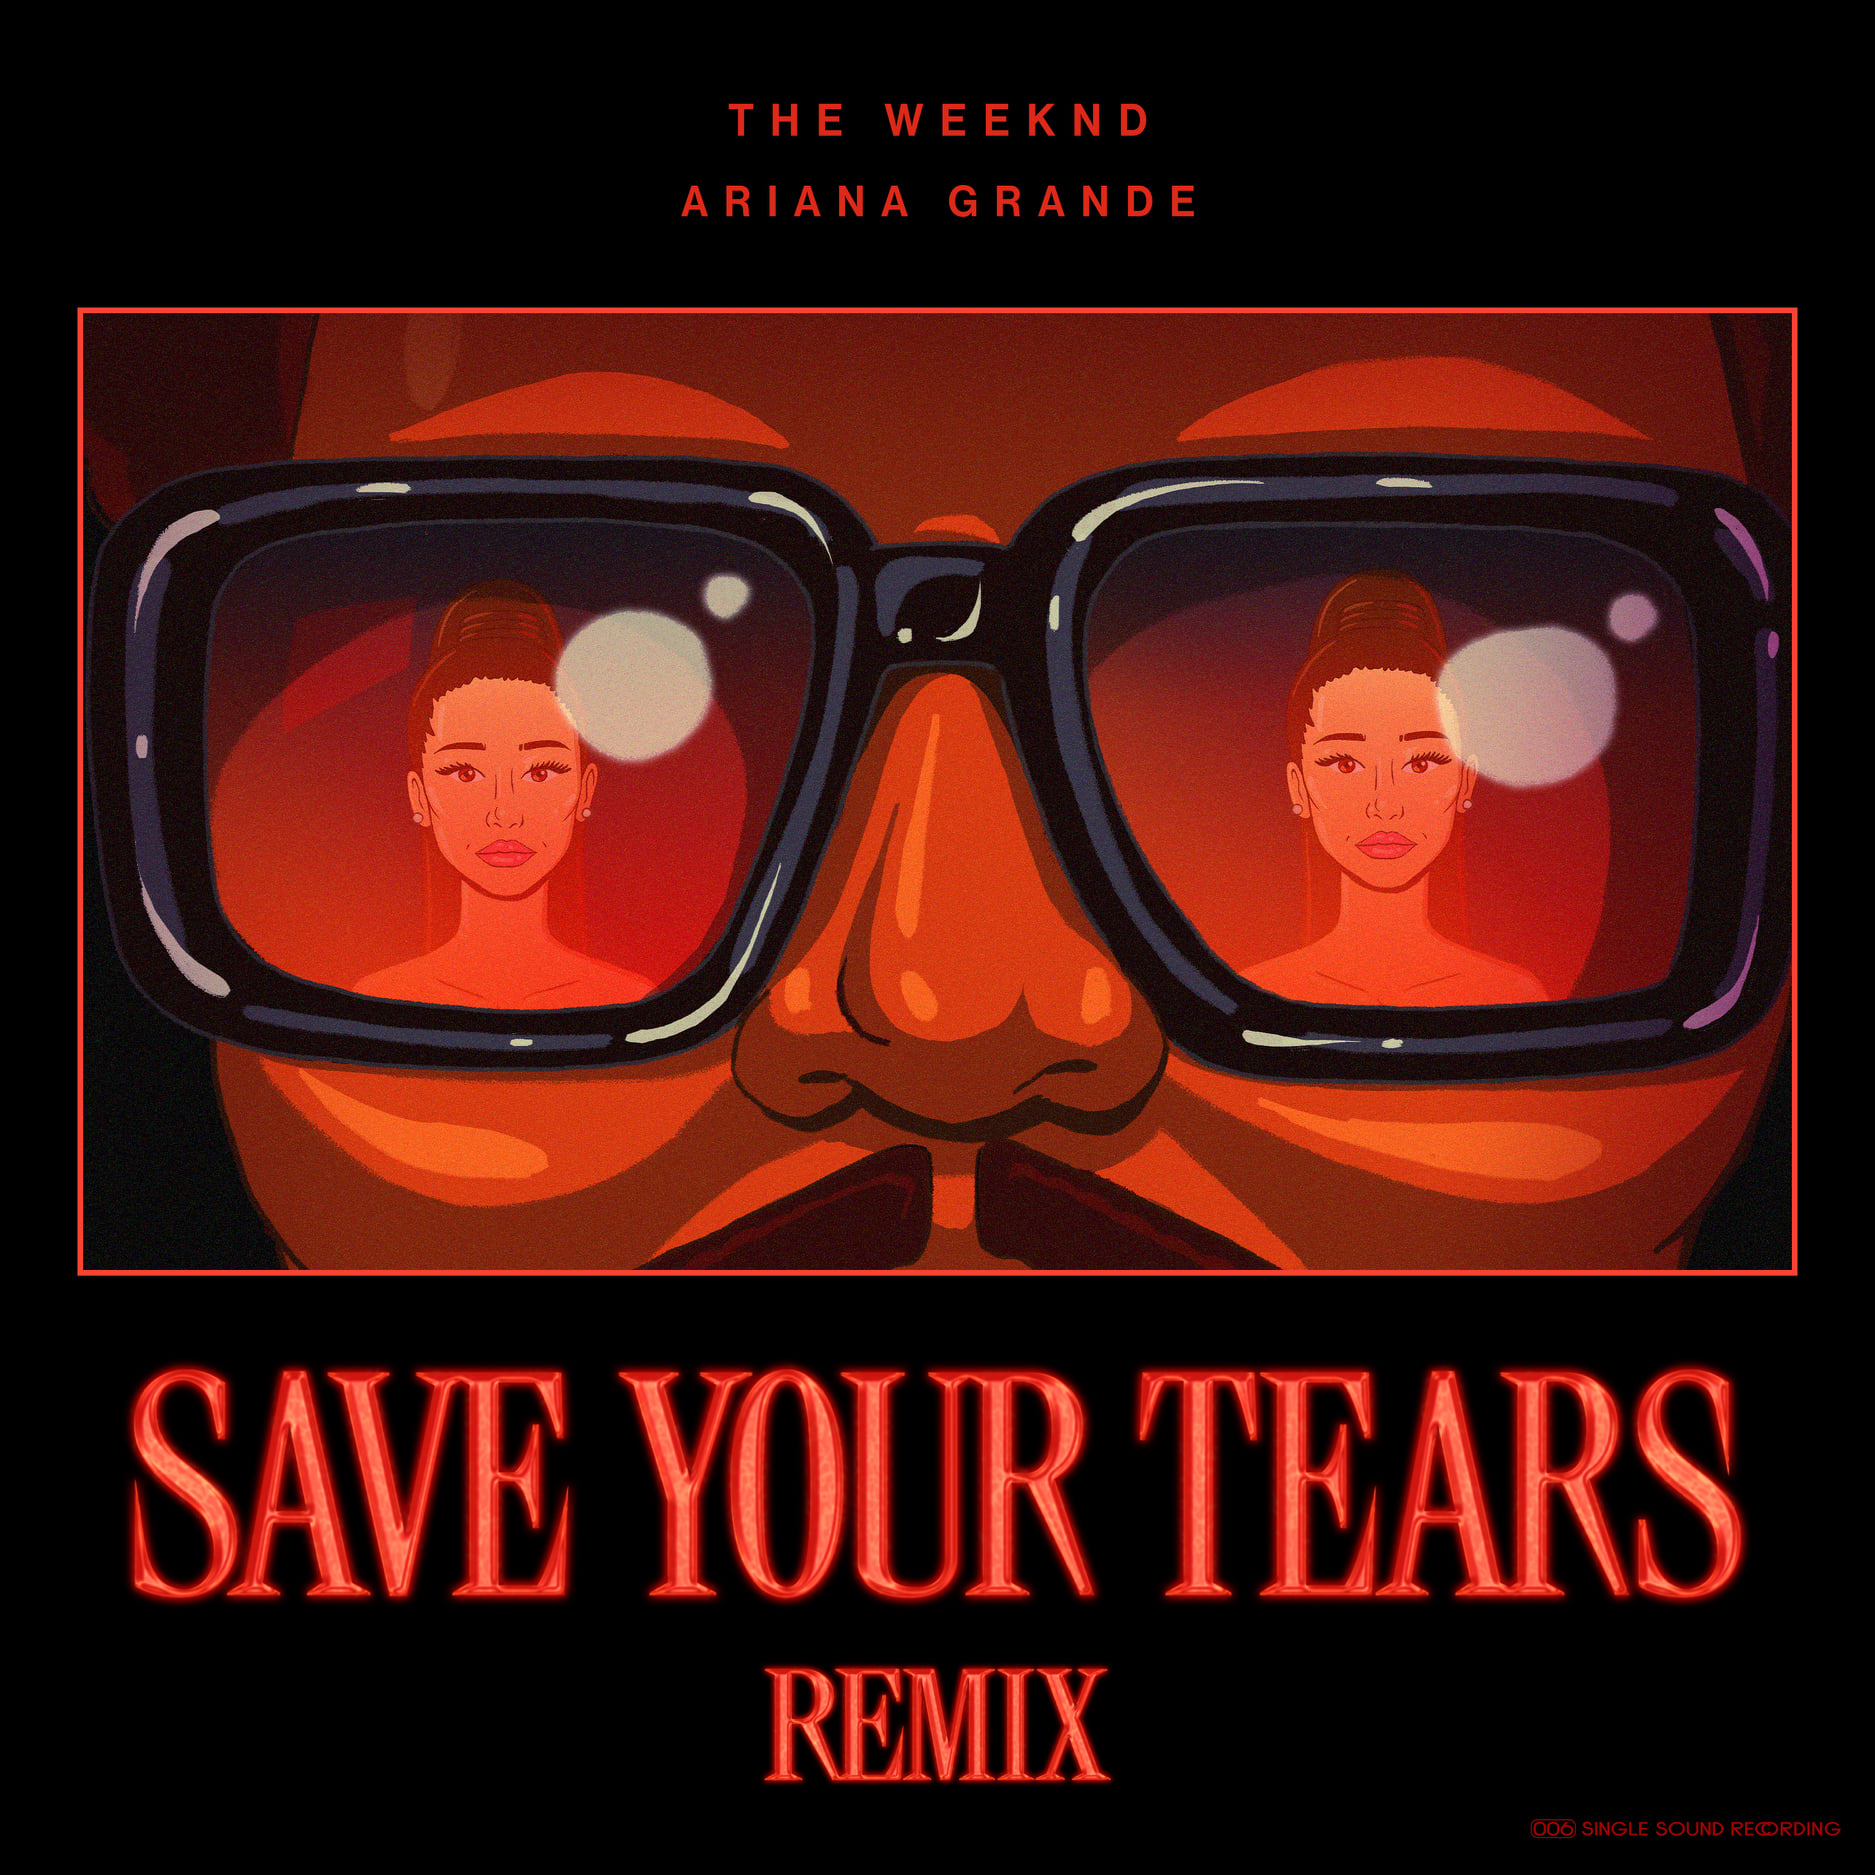 OMG, don’t cry! Ariana Grande și The Weeknd au colaborat din nou. Cât de bine sună ”Save your tears”?